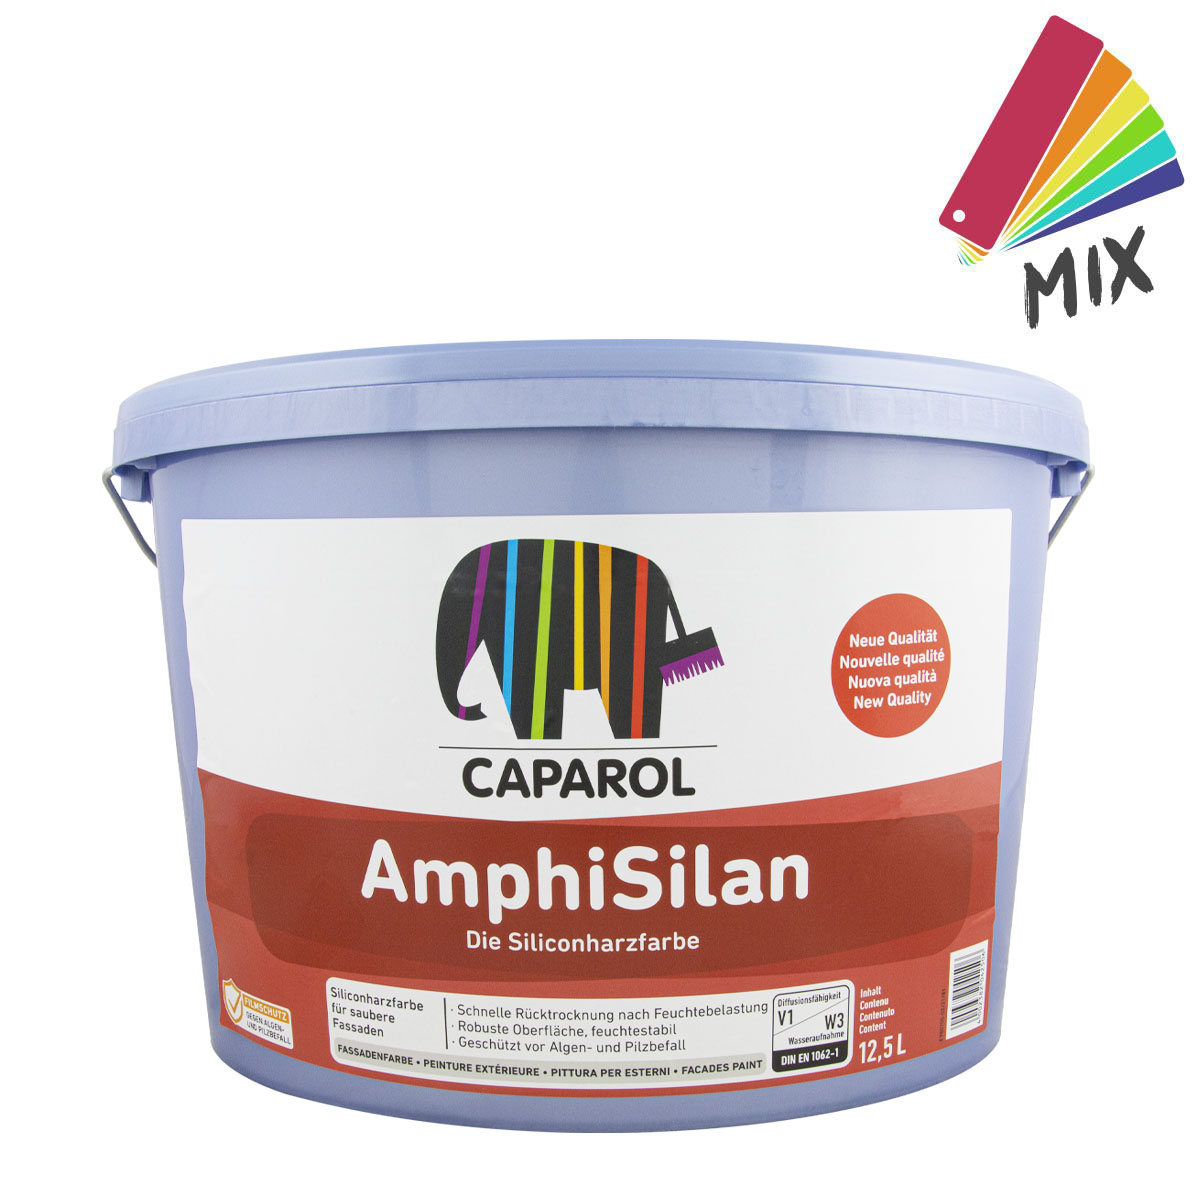 Caparol AmphiSilan 12,5L MIX PG A, Siliconharz, Nano-Quarz